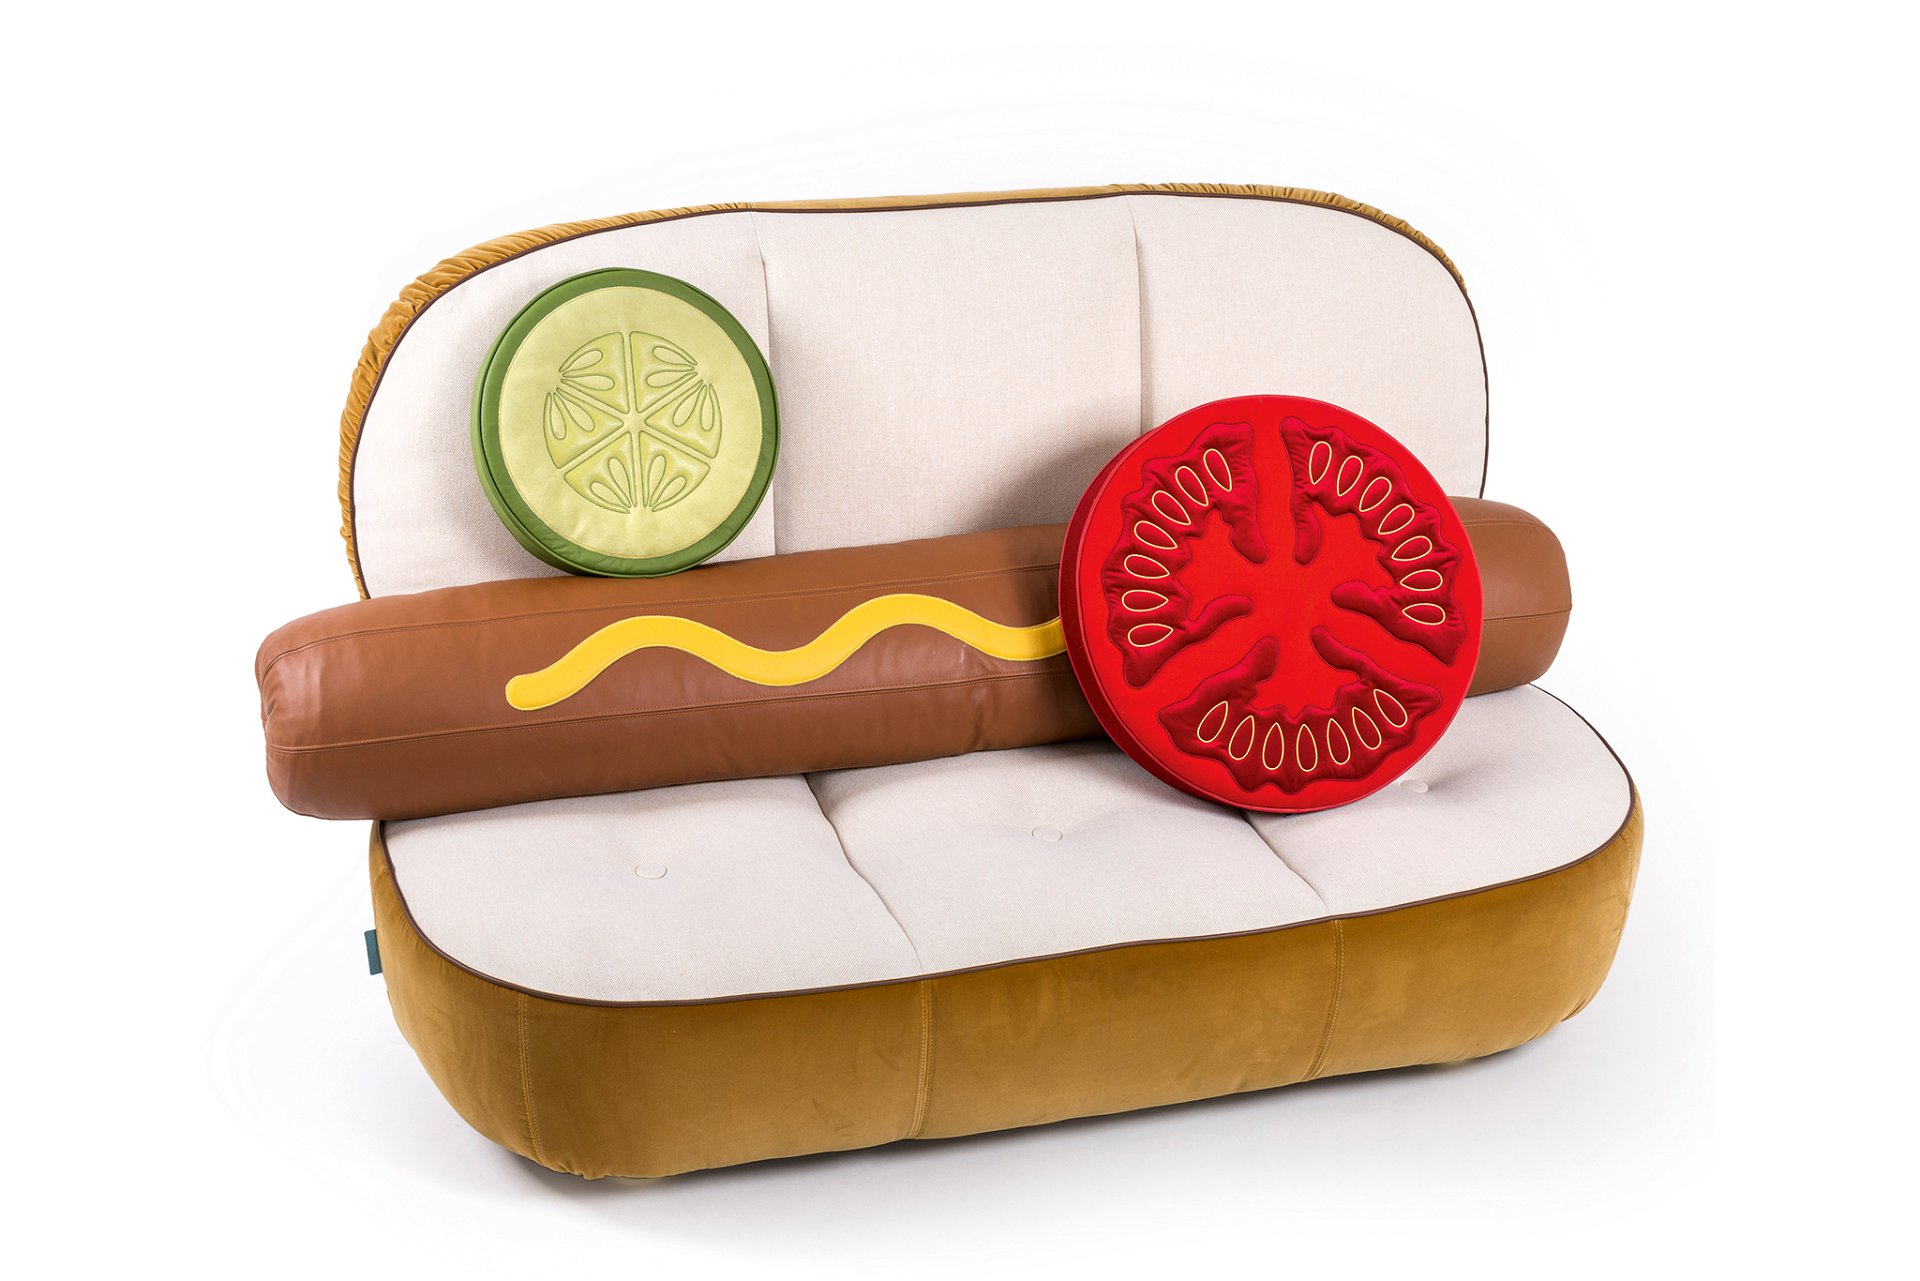 Hotdog mit Senf Hotdog-Sofa mit Holzkern, Material aus Polyester, Viskose, Leinen, Polyurethan und Metall, 188 mal 115 Zentimeter. Pölster sind separat erhältlich. studio-job.com